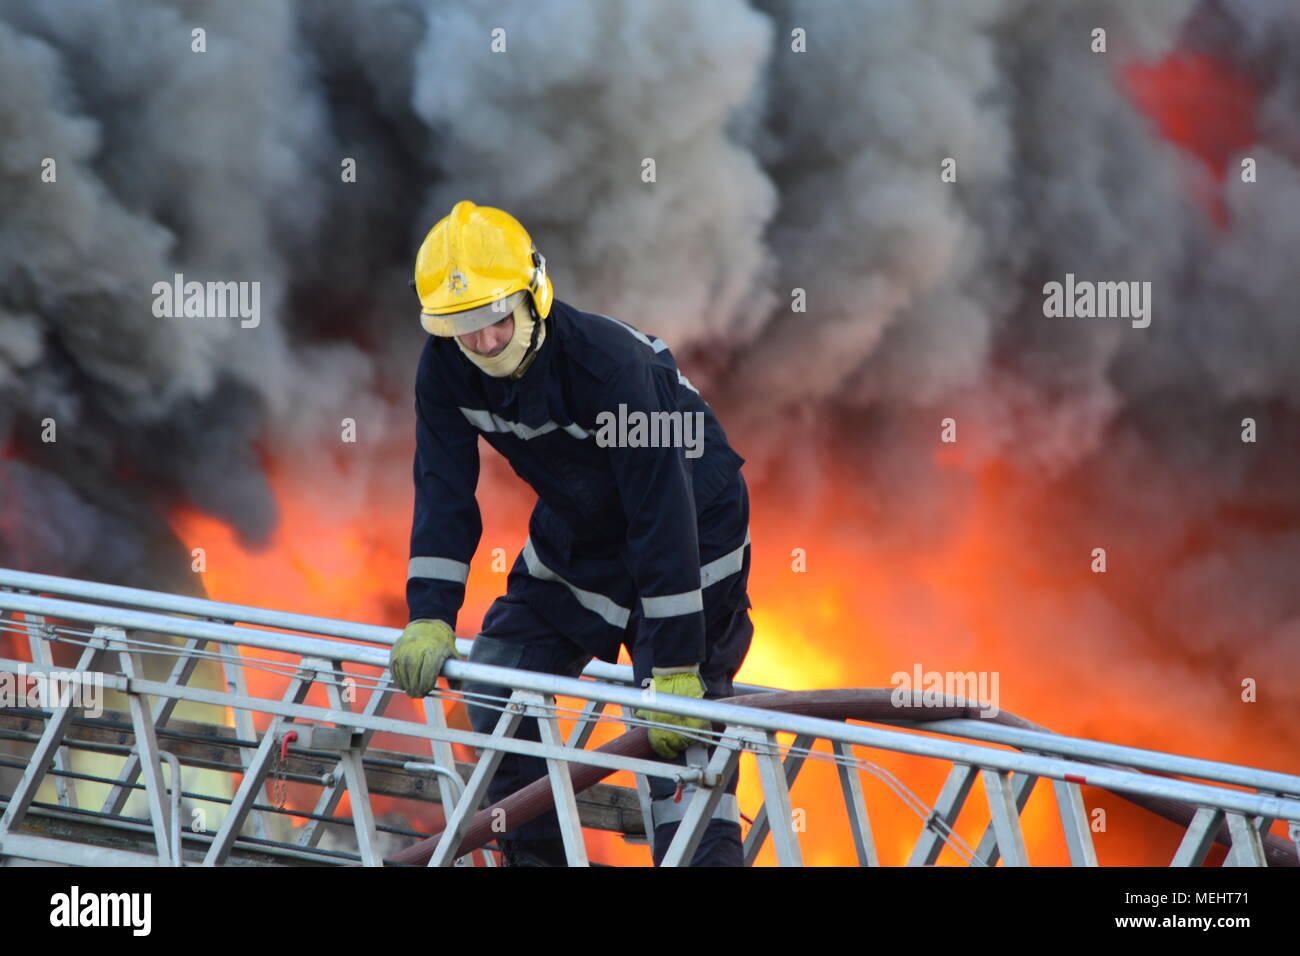 Kashar, Tirana-Albania, 22. April 2018. Riesige Feuer brennt vollständig ein Recyclingunternehmen in Kashar, 10 Brand-Einheiten, die bereits auf dem Szene kämpfen, um die Flammen zu löschen. Keine Verletzungen oder Todesfälle gemeldet werden Credit: Antonio Cakshiri/Alamy leben Nachrichten Stockfoto